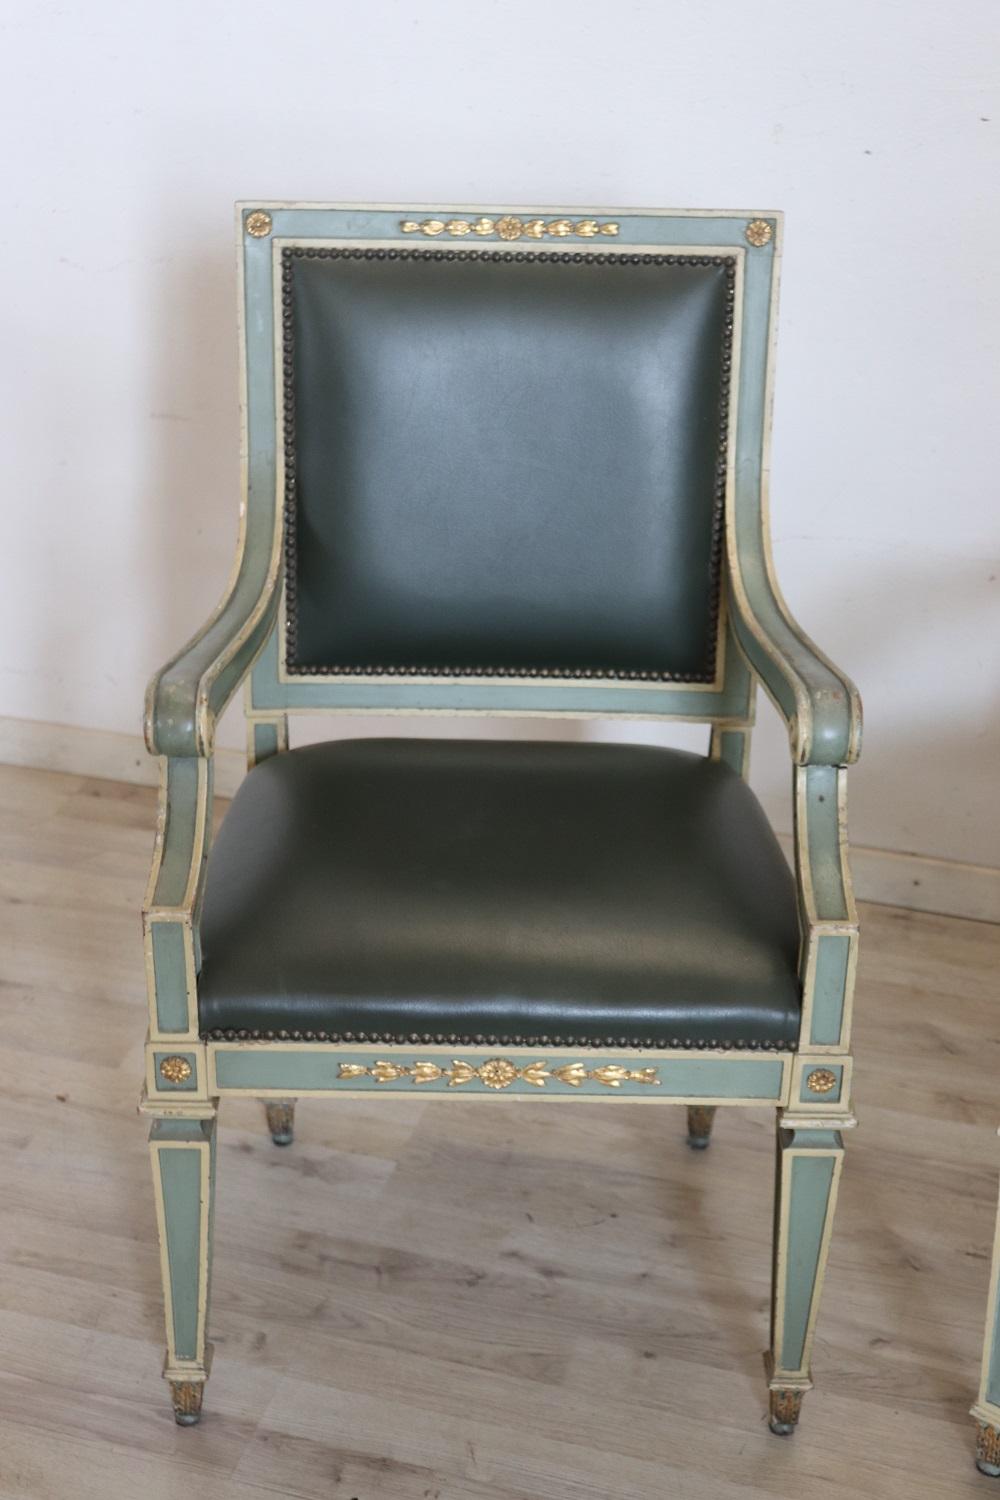 Hübsche italienische antike Sessel, 2er-Set, 1930er Jahre. Diese Sessel sind im Louis XVI-Stil aus lackiertem Holz mit feinen vergoldeten Verzierungen. Gepolstert mit grünem Lederimitat. Dieser schöne Sessel hat eine anschmiegsame Form und einen